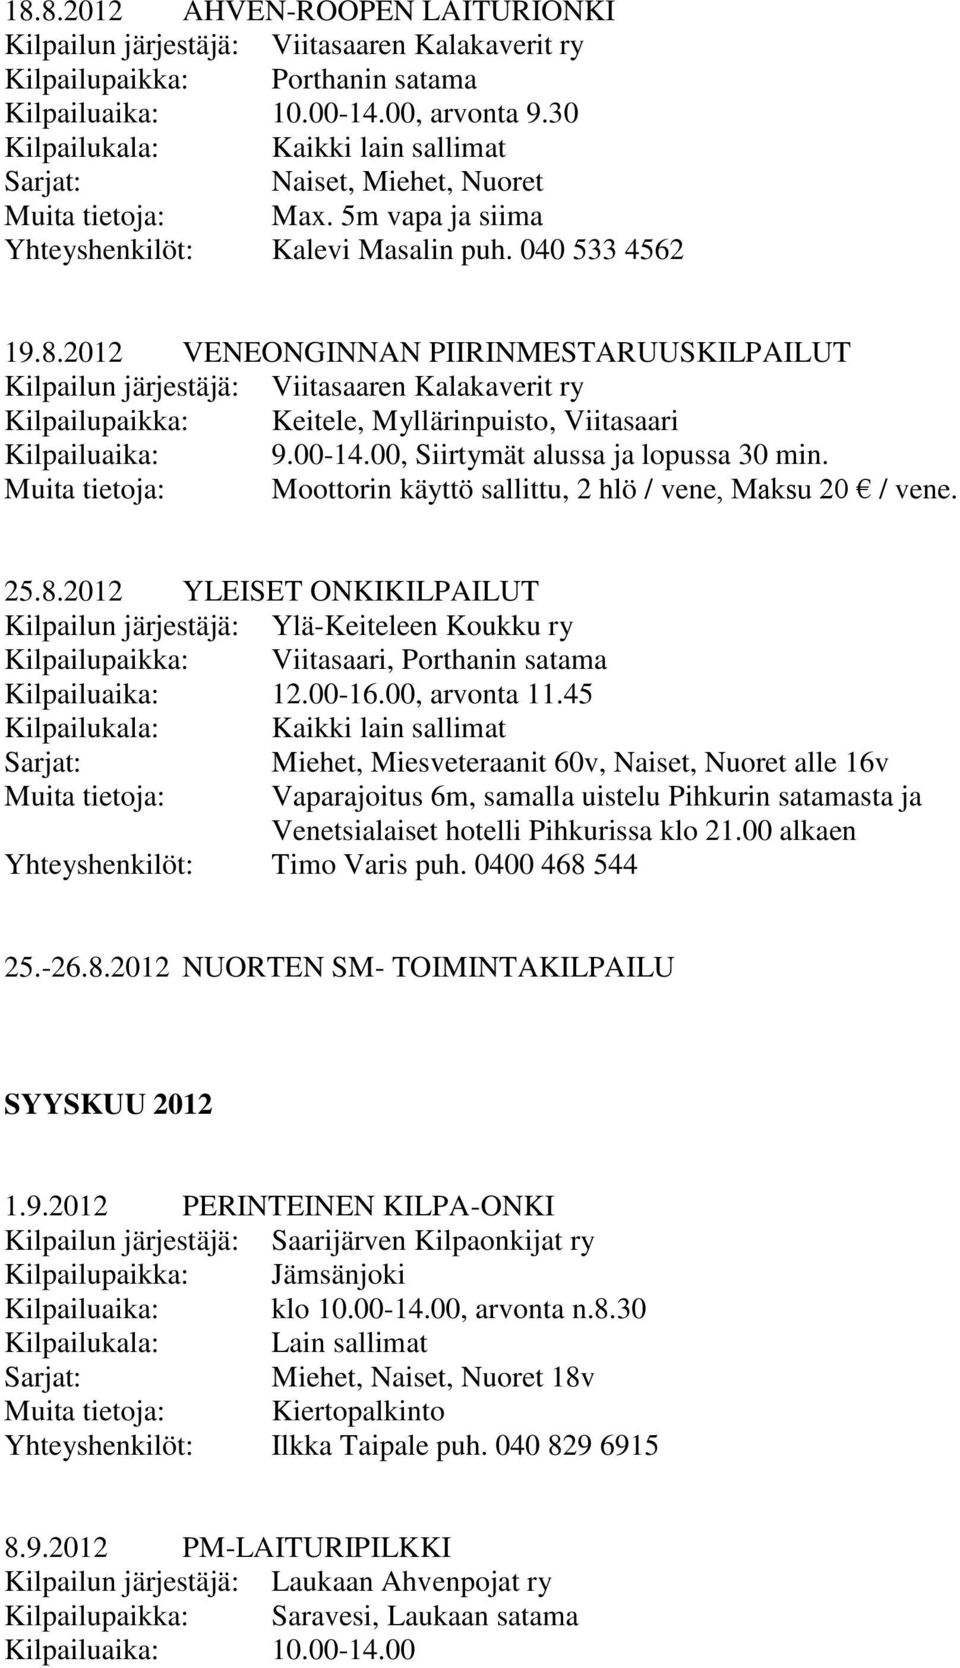 2012 YLEISET ONKIKILPAILUT Kilpailun järjestäjä: Ylä-Keiteleen Koukku ry Kilpailupaikka: Viitasaari, Porthanin satama Kilpailuaika: 12.00-16.00, arvonta 11.